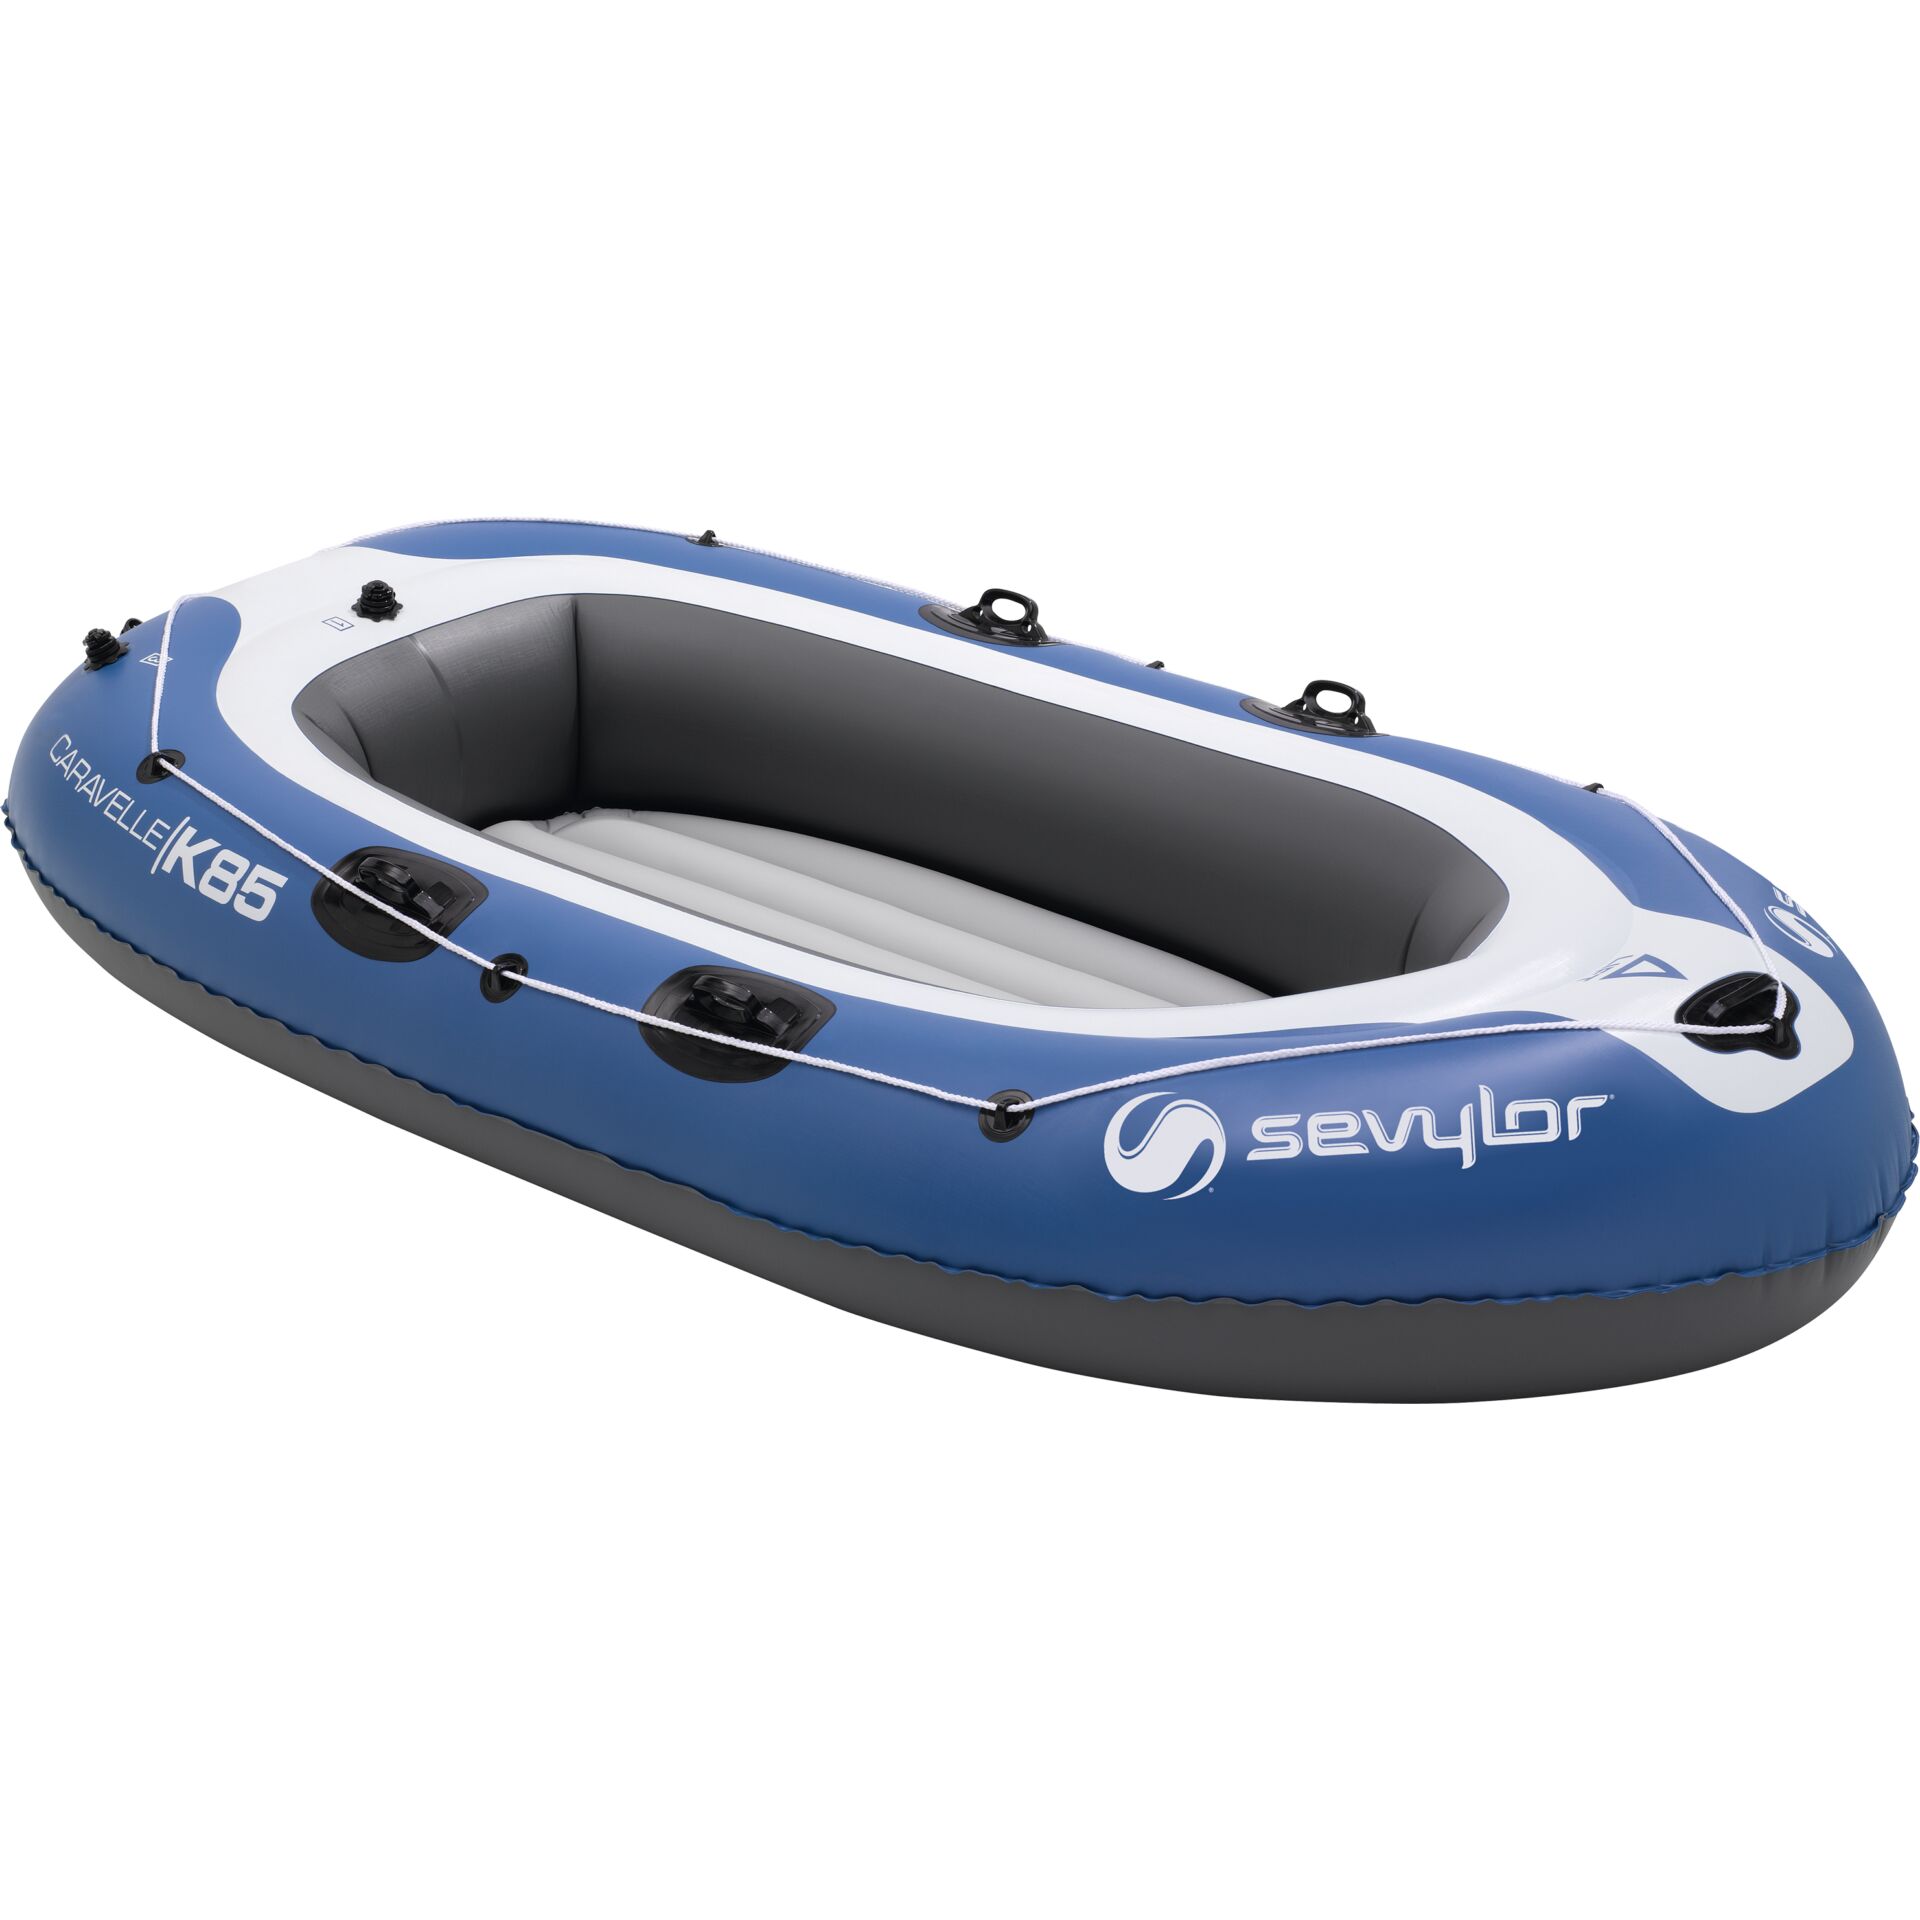 Sevylor Caravelle K85 inflatable Boat